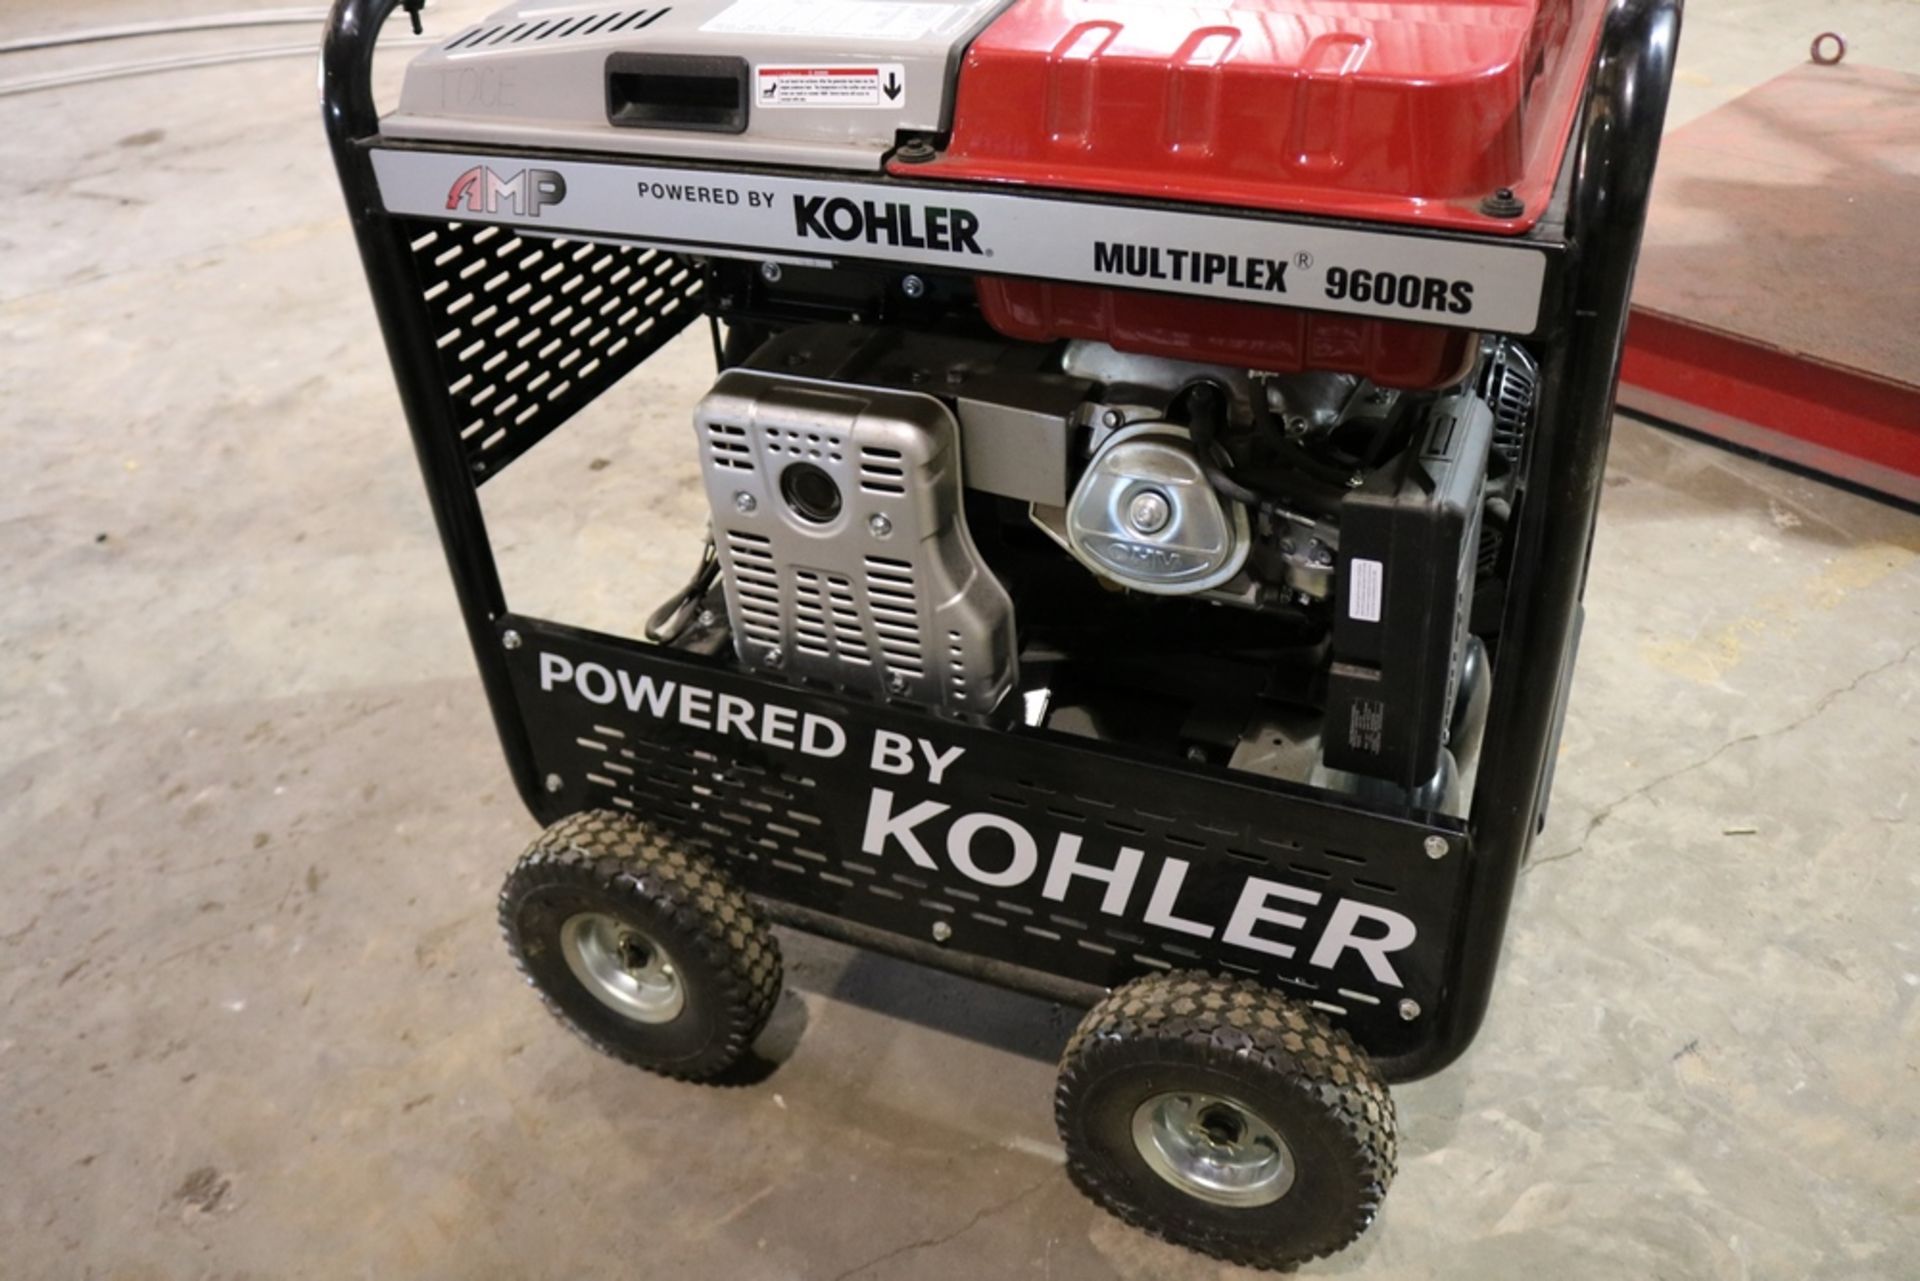 Kohler Multiplex 9600RS Air Compressor, - Image 2 of 16